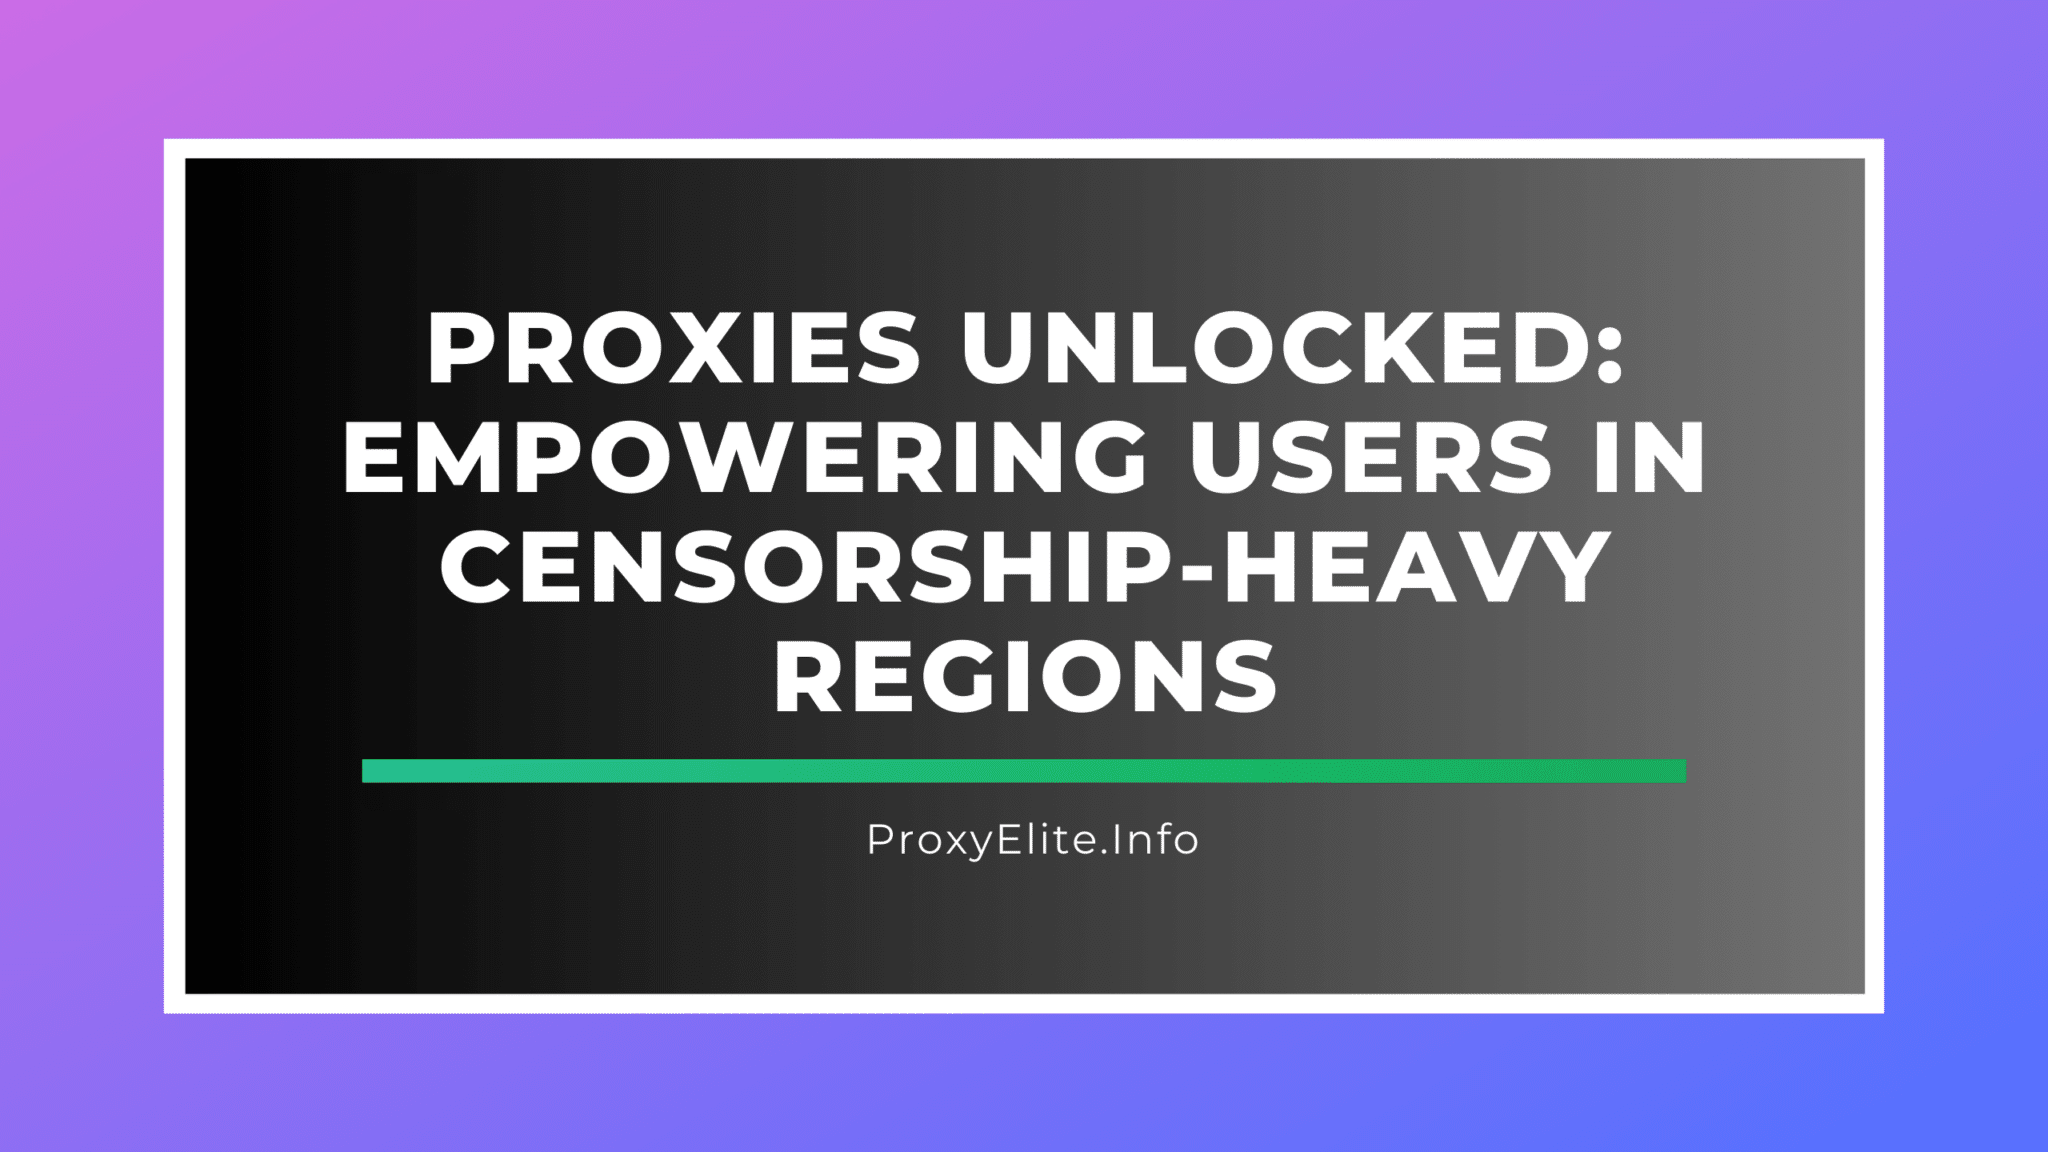 Разблокированные прокси: расширение прав и возможностей пользователей в регионах с высокой цензурой